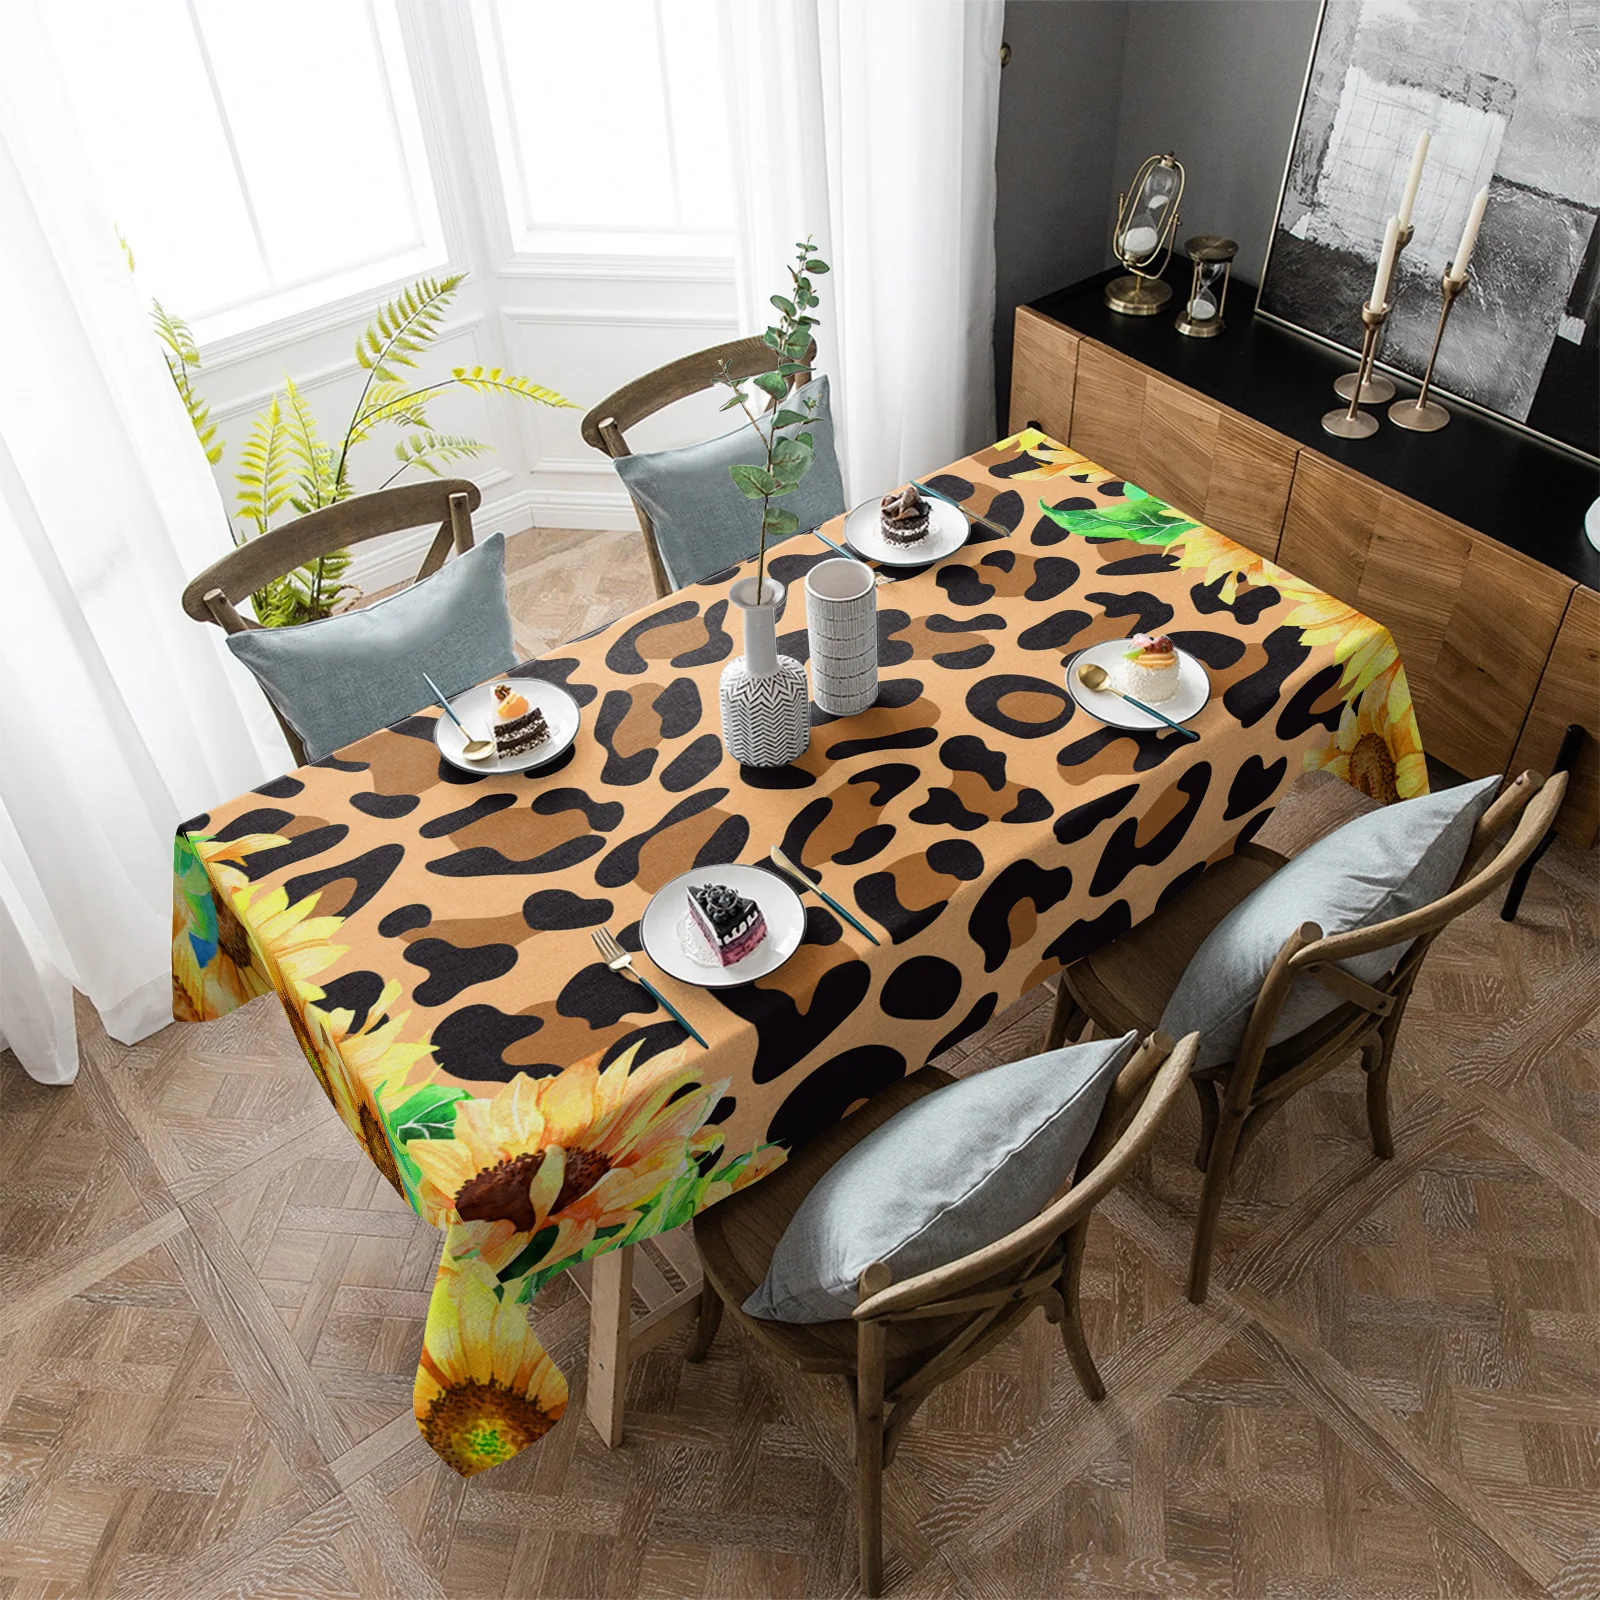 

Водонепроницаемая скатерть в виде подсолнуха с леопардовой текстурой, товары для украшения стола, прямоугольная ткань для декора кухонного стола